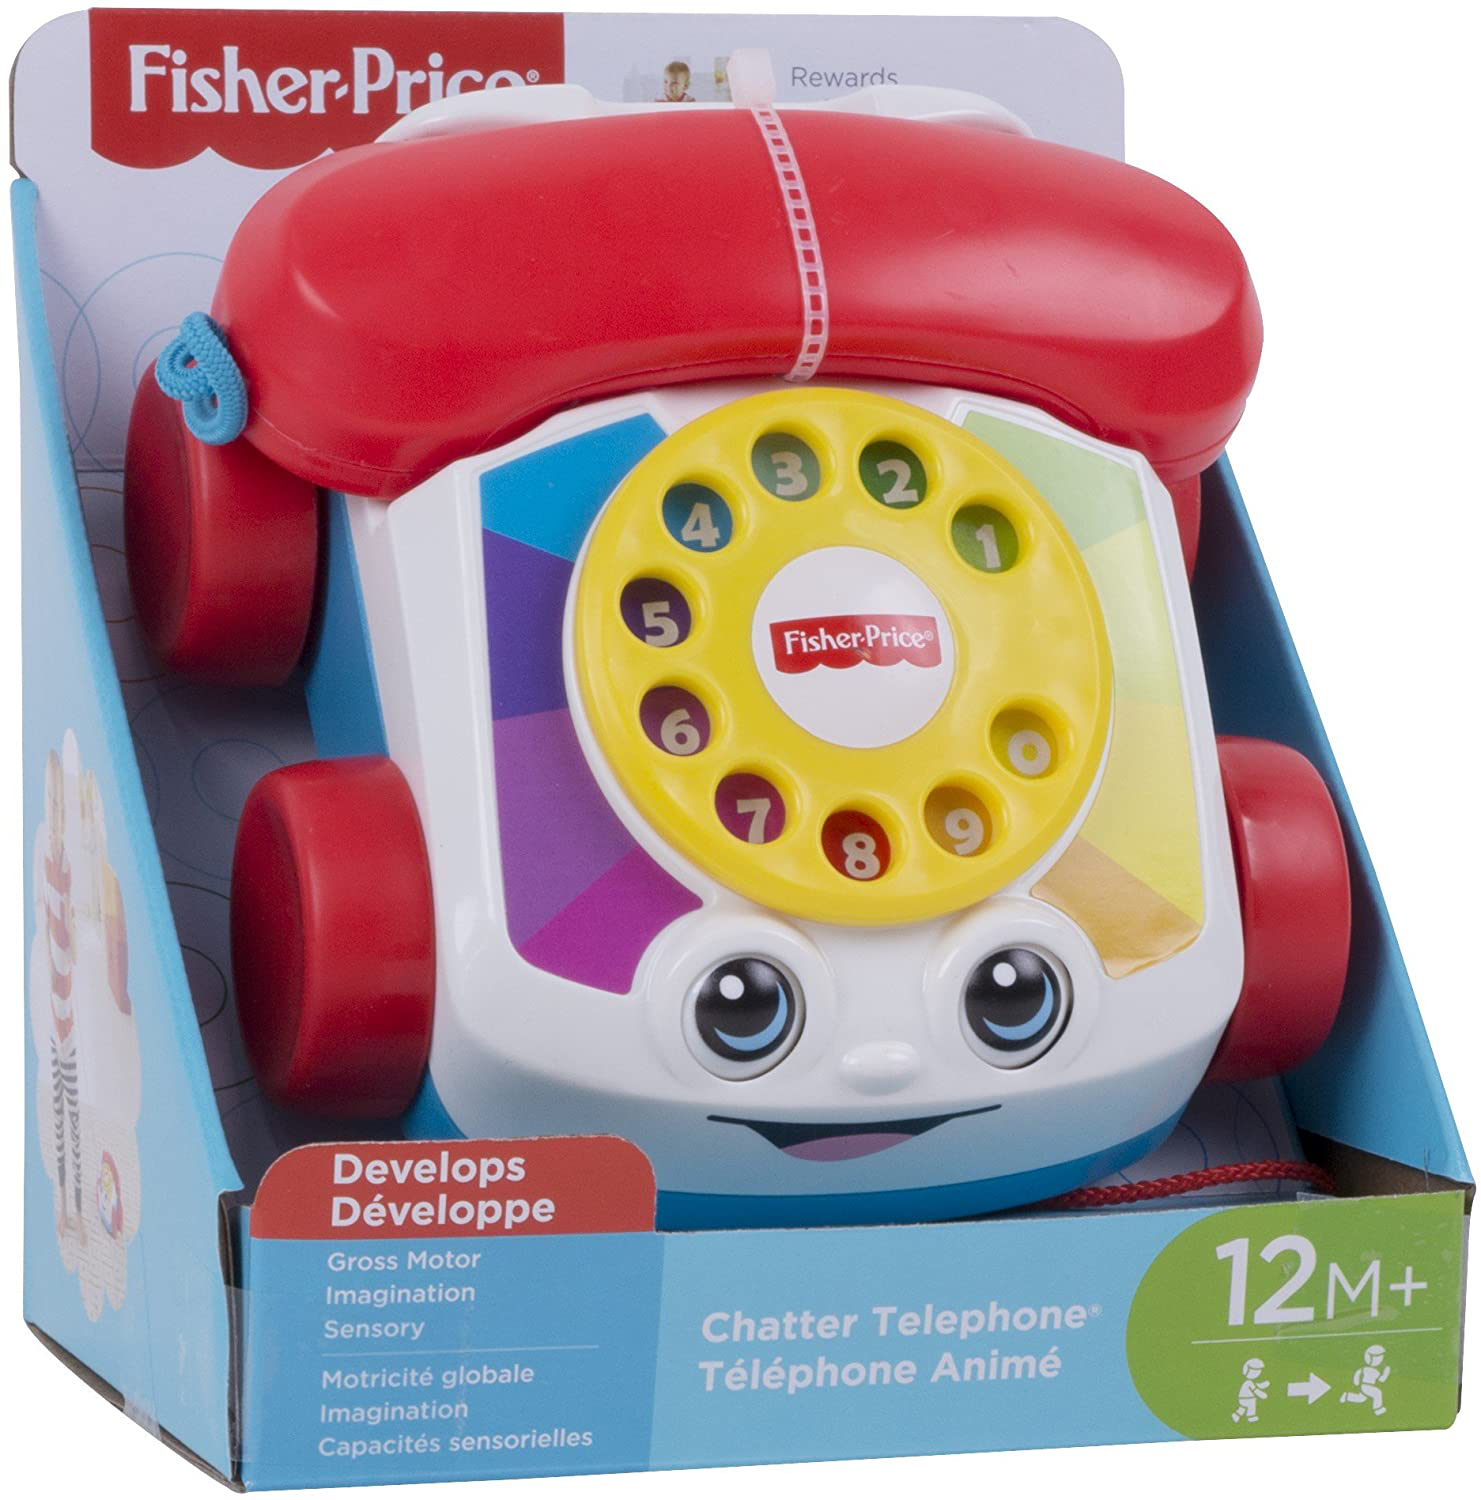 Телефончик Fisher Price. Игрушка "телефон". Умный телефон игрушка Fisher Price. Детский стационарный телефон игрушка. Reg телефон